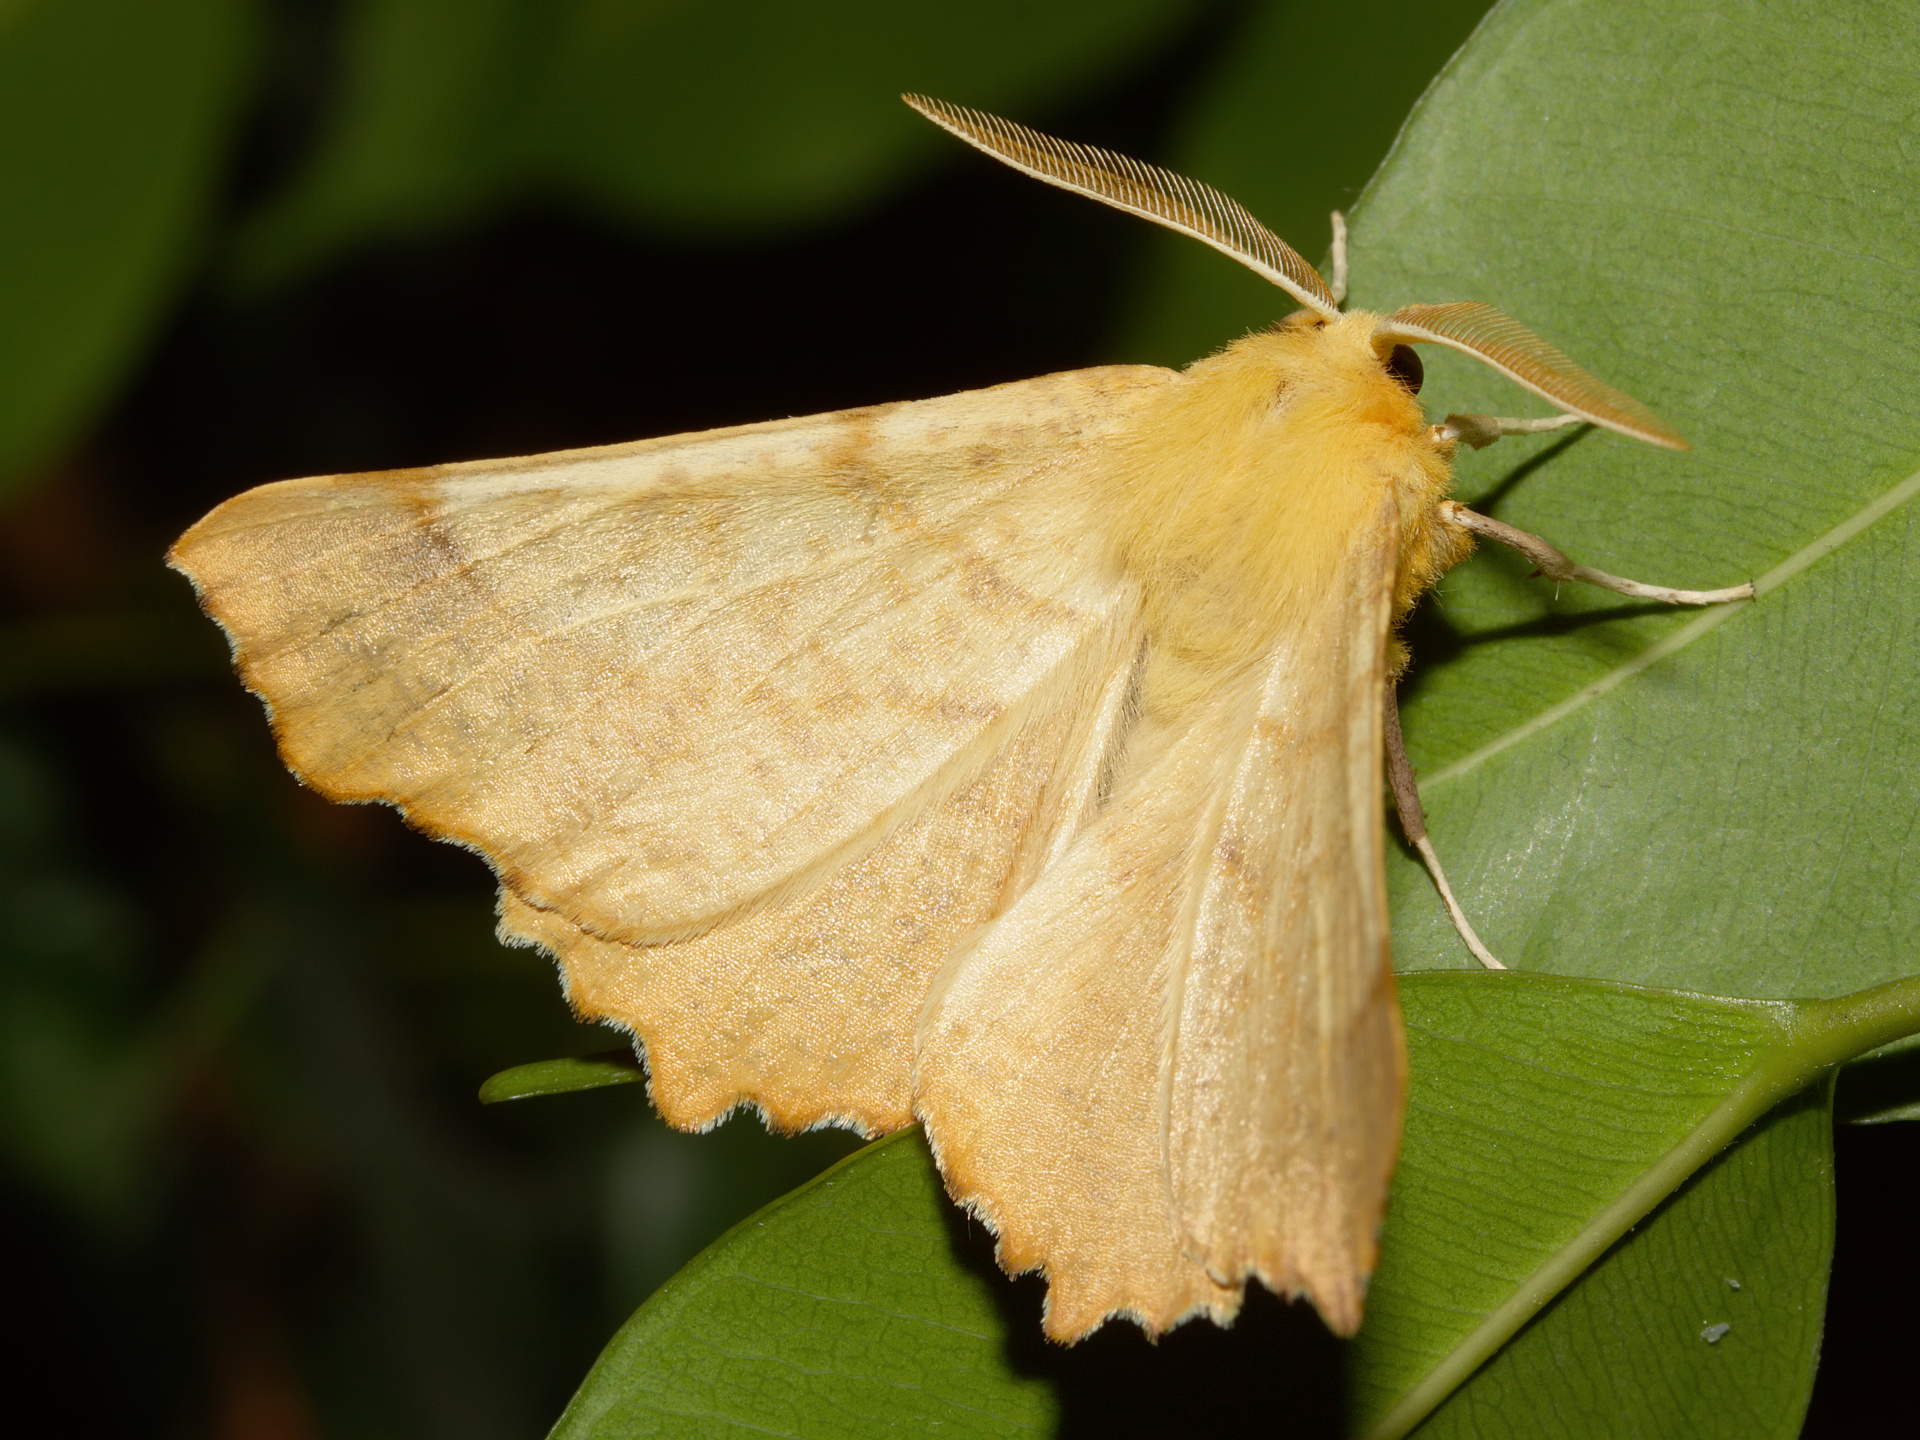 Ennomos autumnaria (Zwierzęta » Owady » Motyle i ćmy » Geometridae)